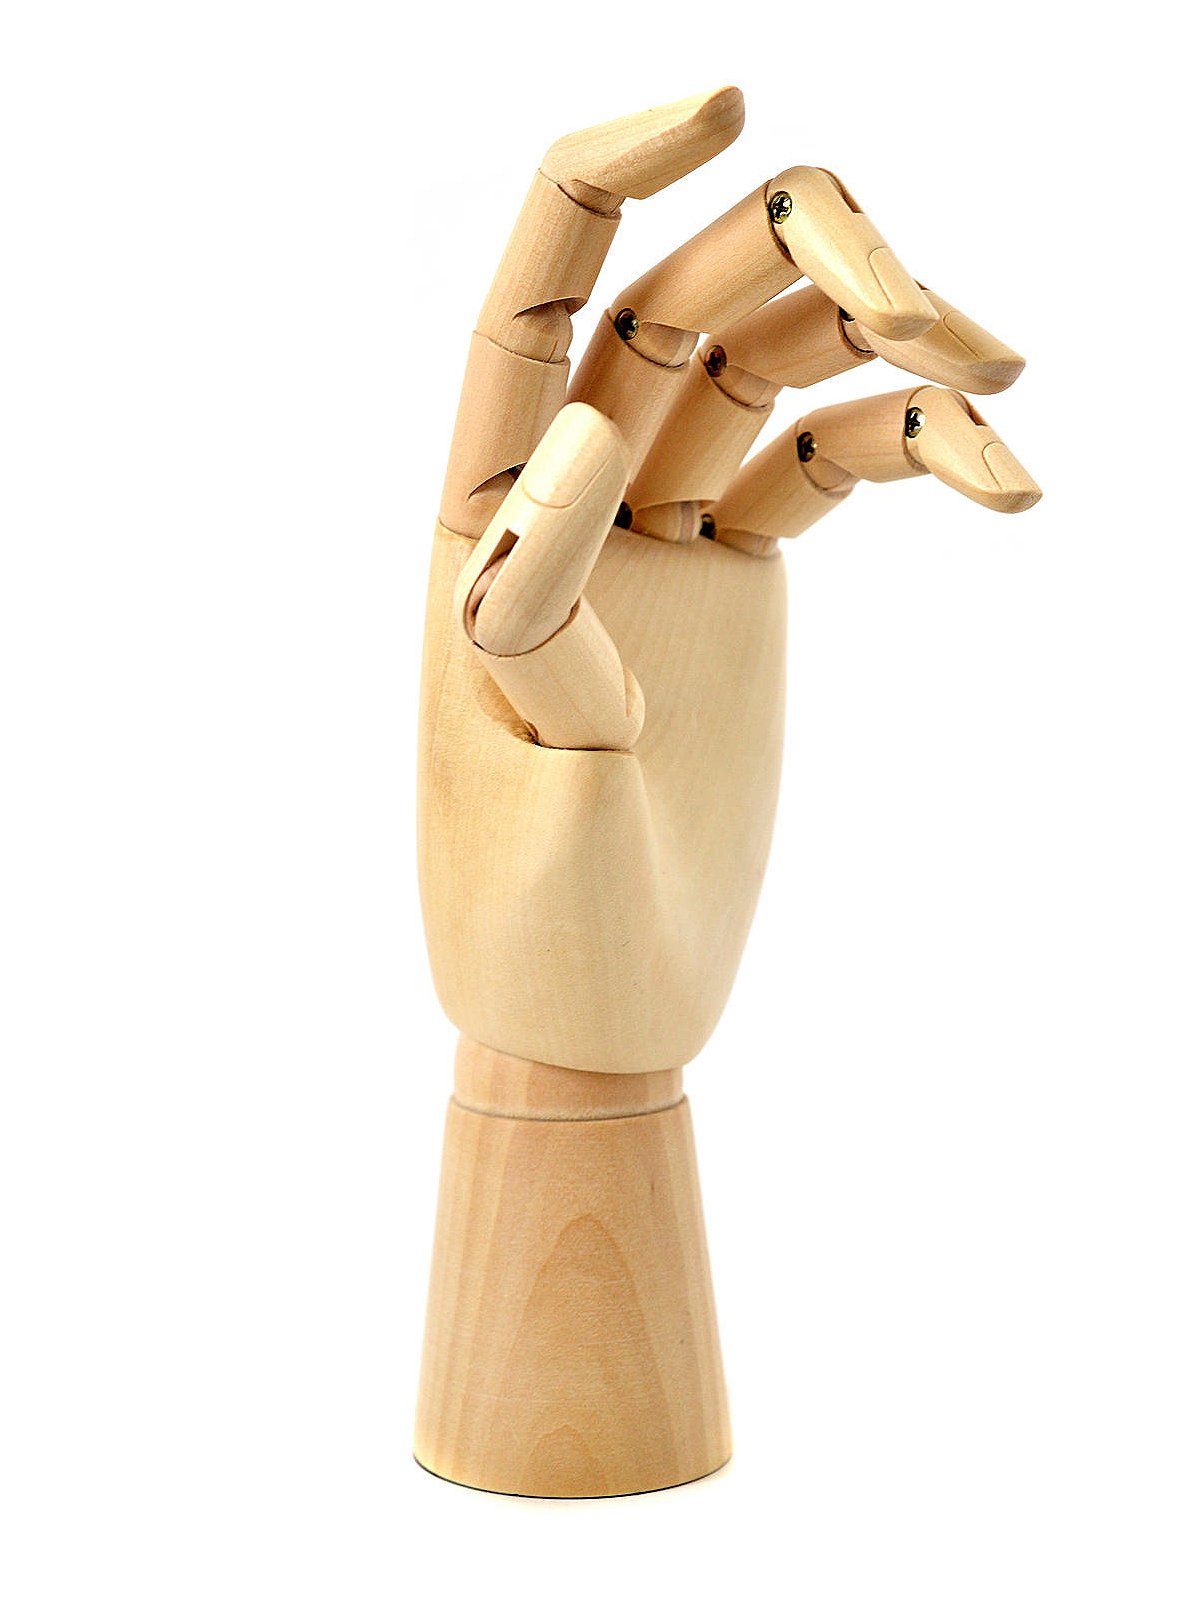 Jack Richeson Adult Female Wooden Manikin Hand, Left